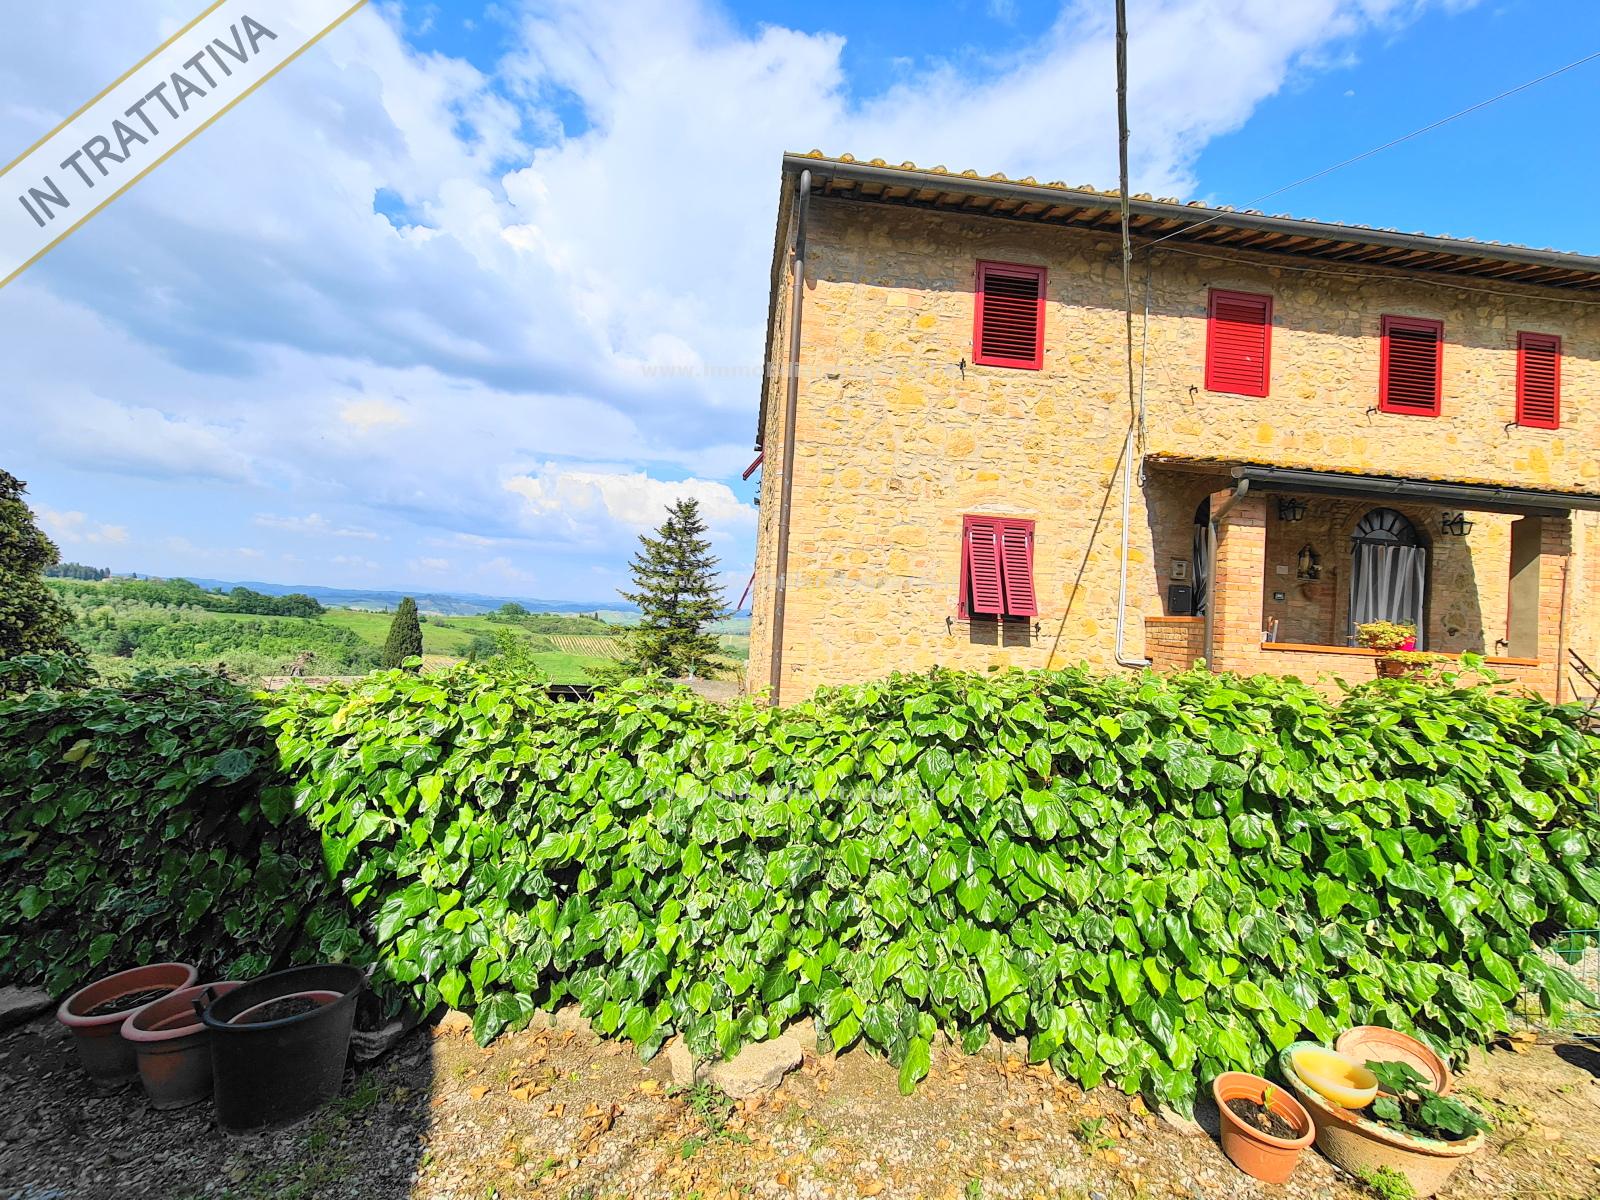 Rustico / Casale in vendita a Gambassi Terme, 8 locali, prezzo € 350.000 | PortaleAgenzieImmobiliari.it